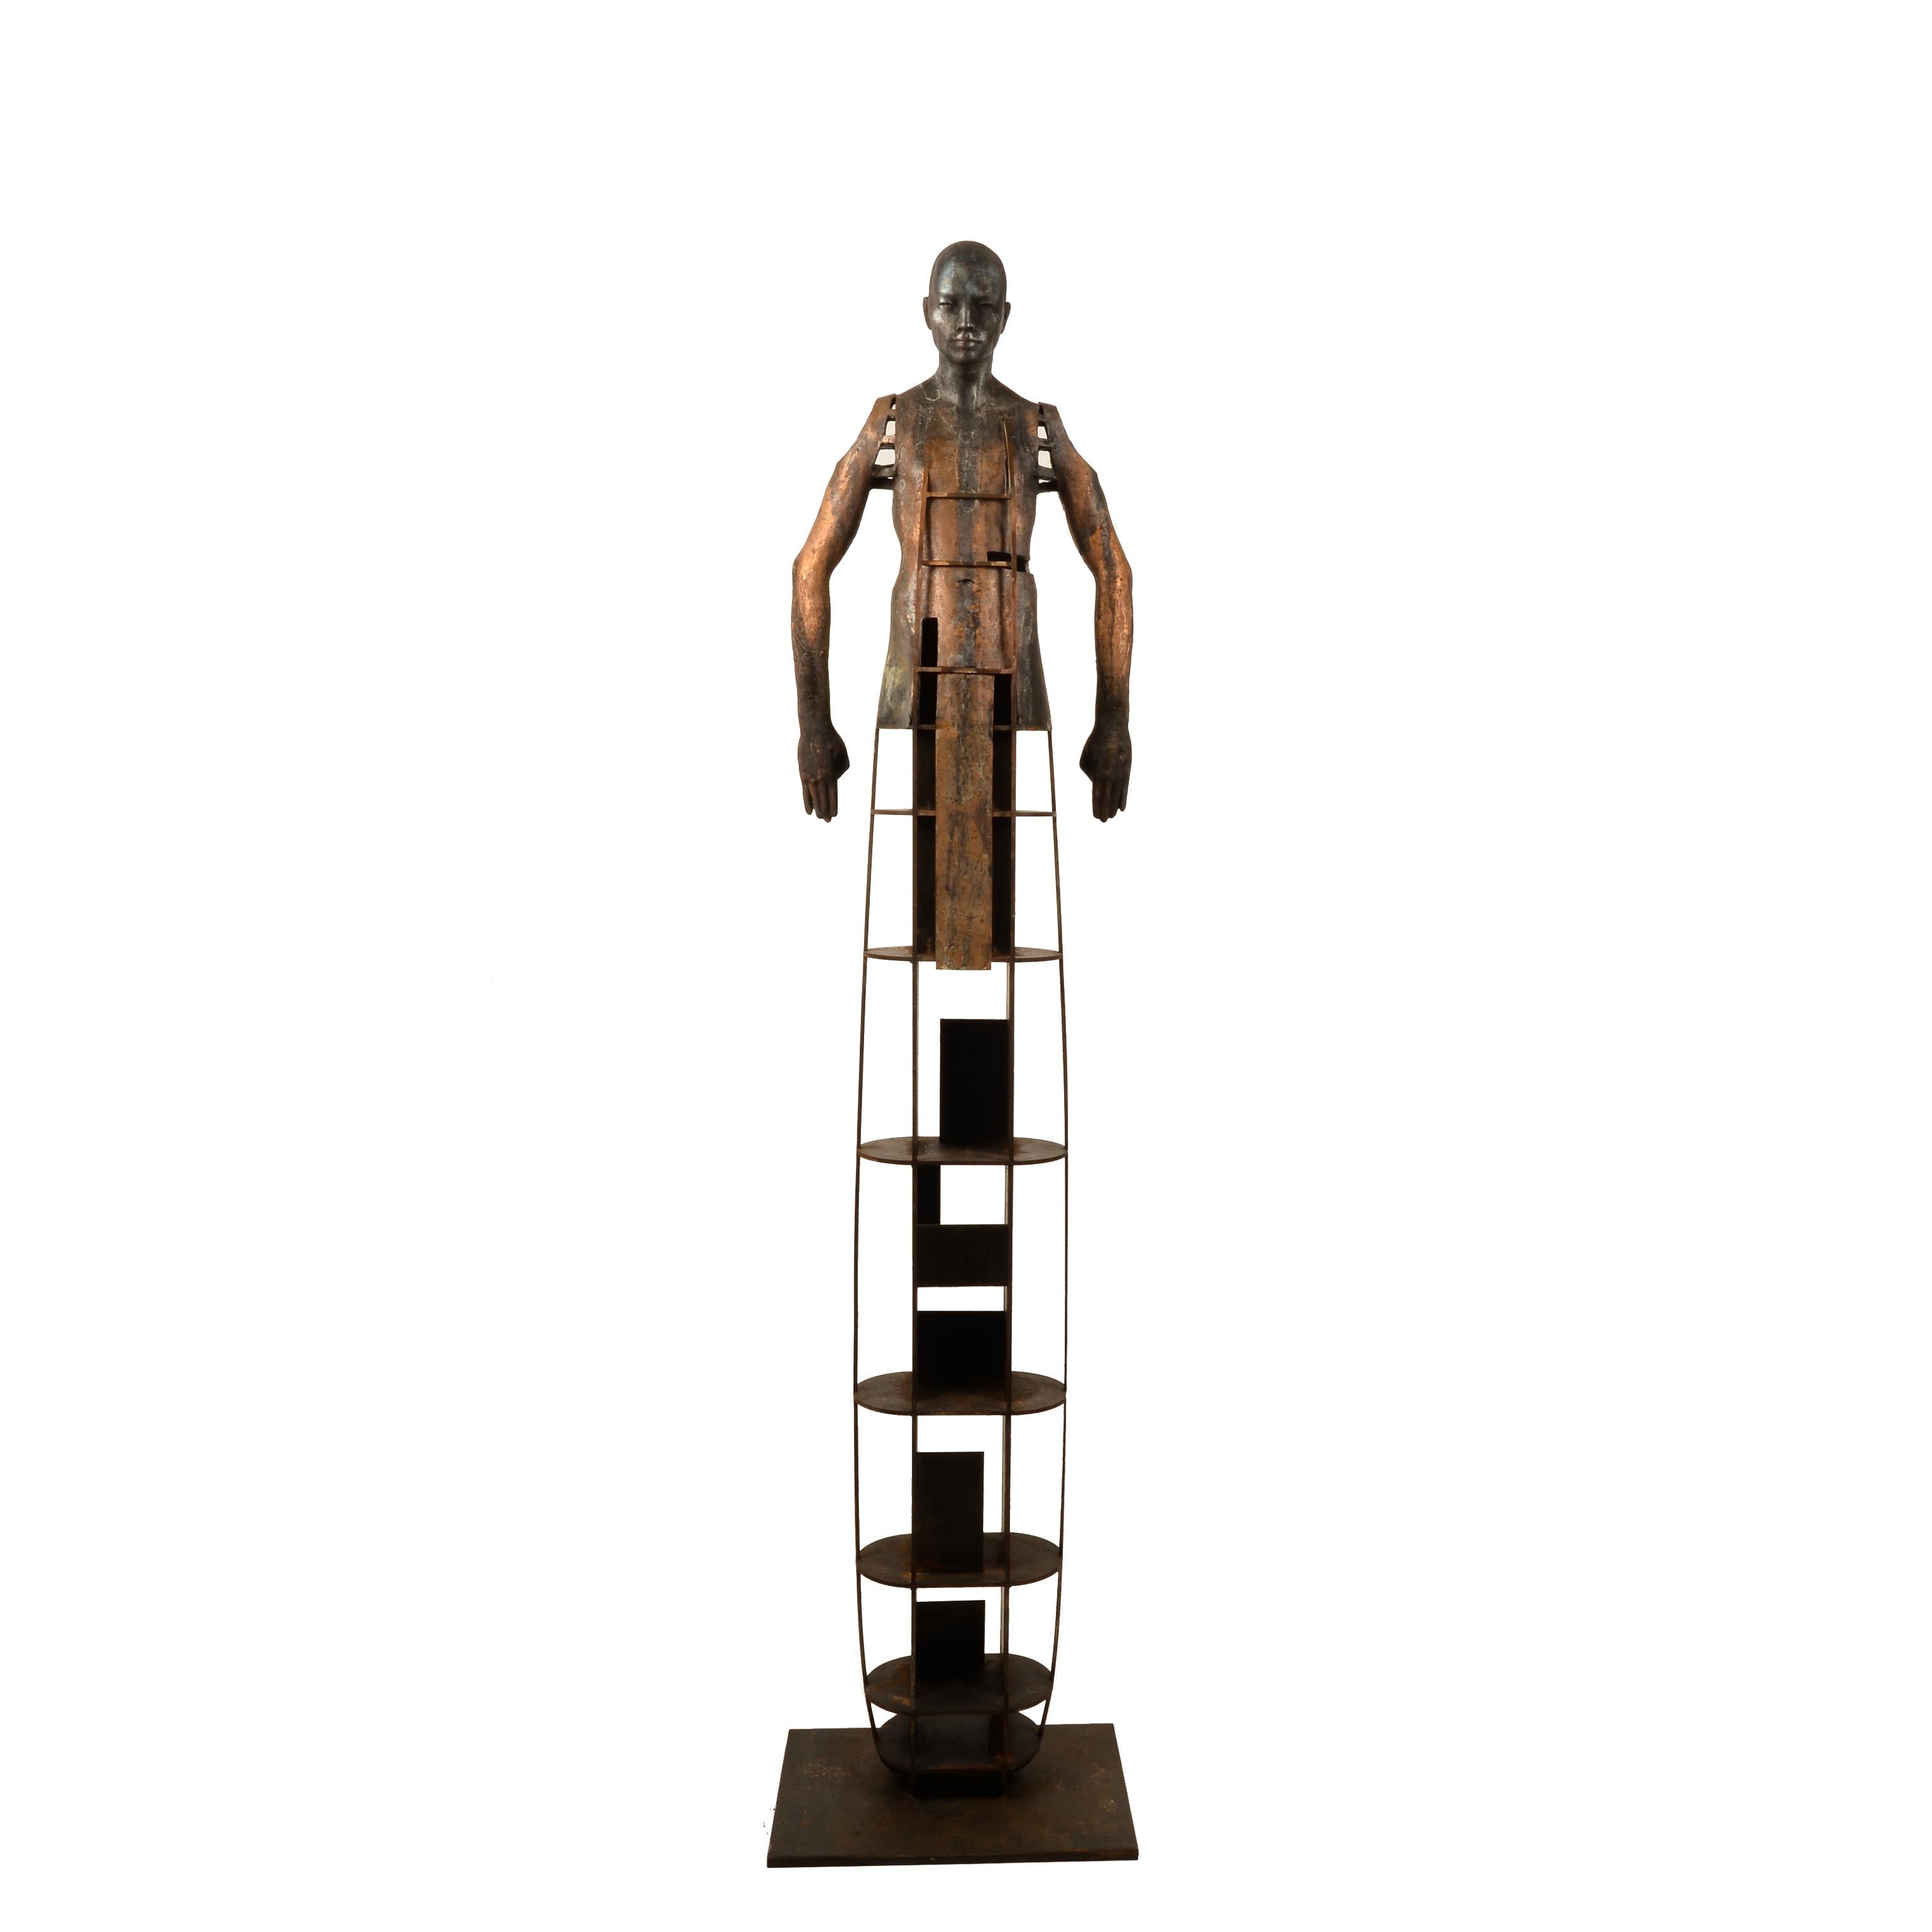 Konstruktion II - Bronze-Skulptur Surreal, die menschliche Form verwandelt, üppige Patina